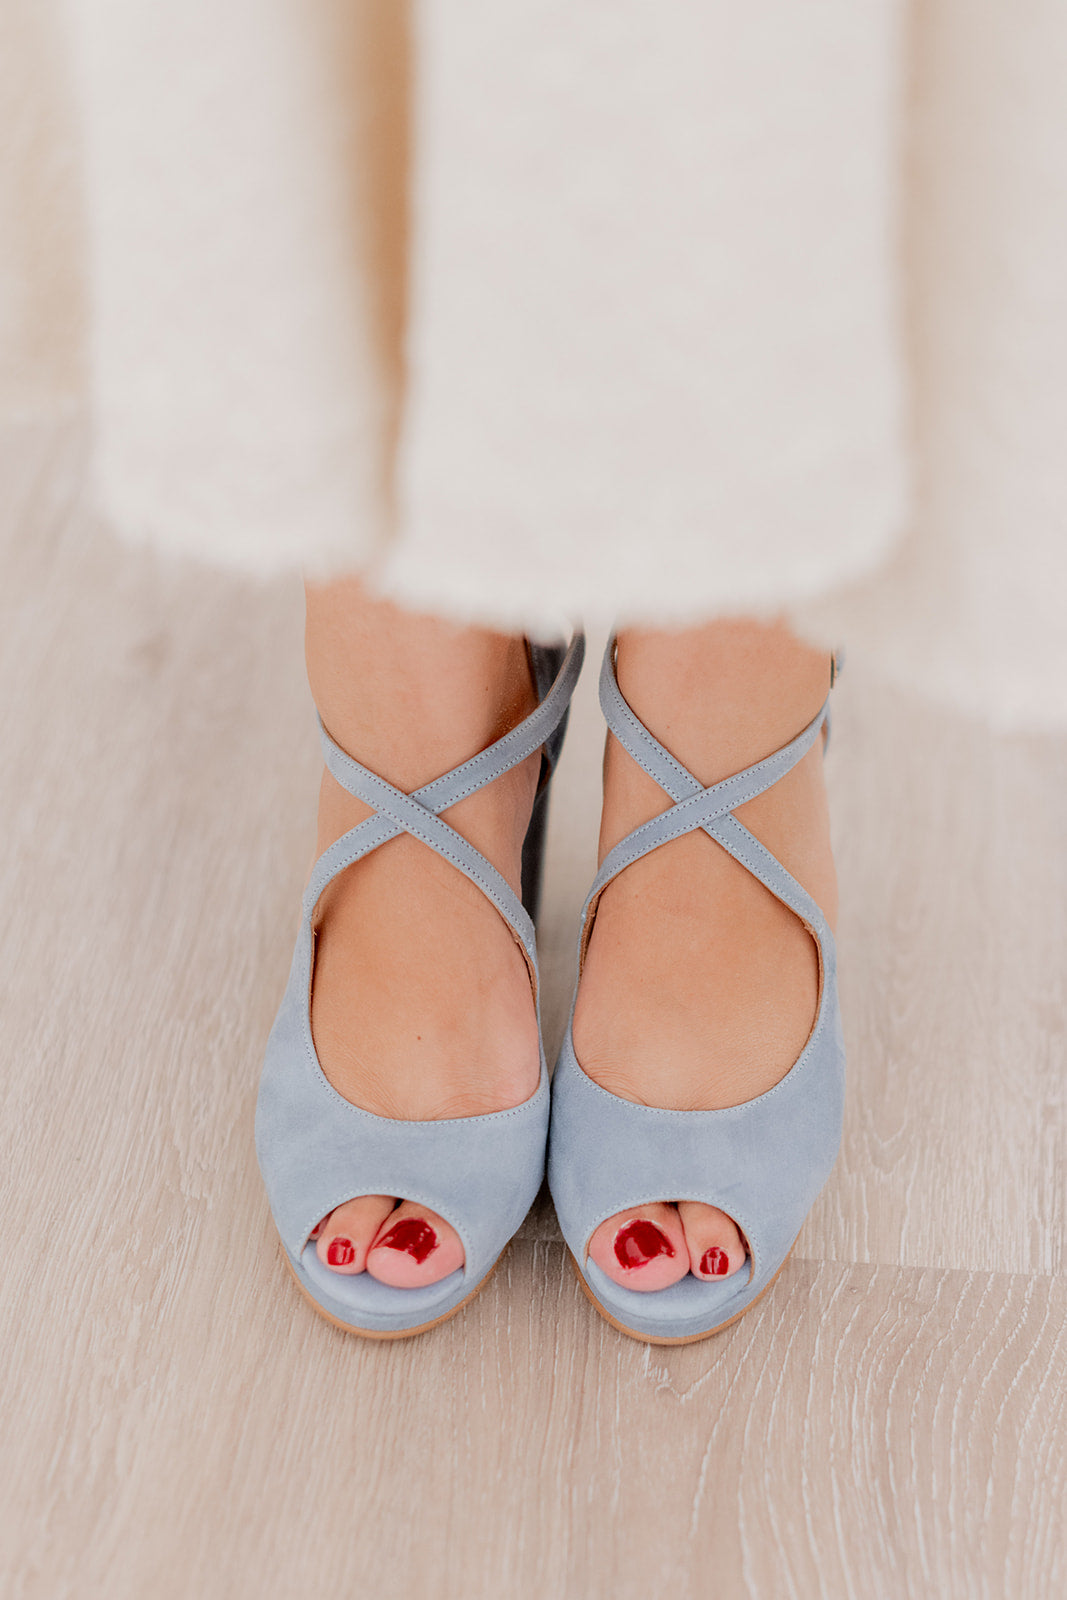 Palma Azul de 7.5 cm-sandalias-agosto 23, ante, liso, novia, palma, sandalia, tacon de 7.5, zapatos de color azul-Loovshoes